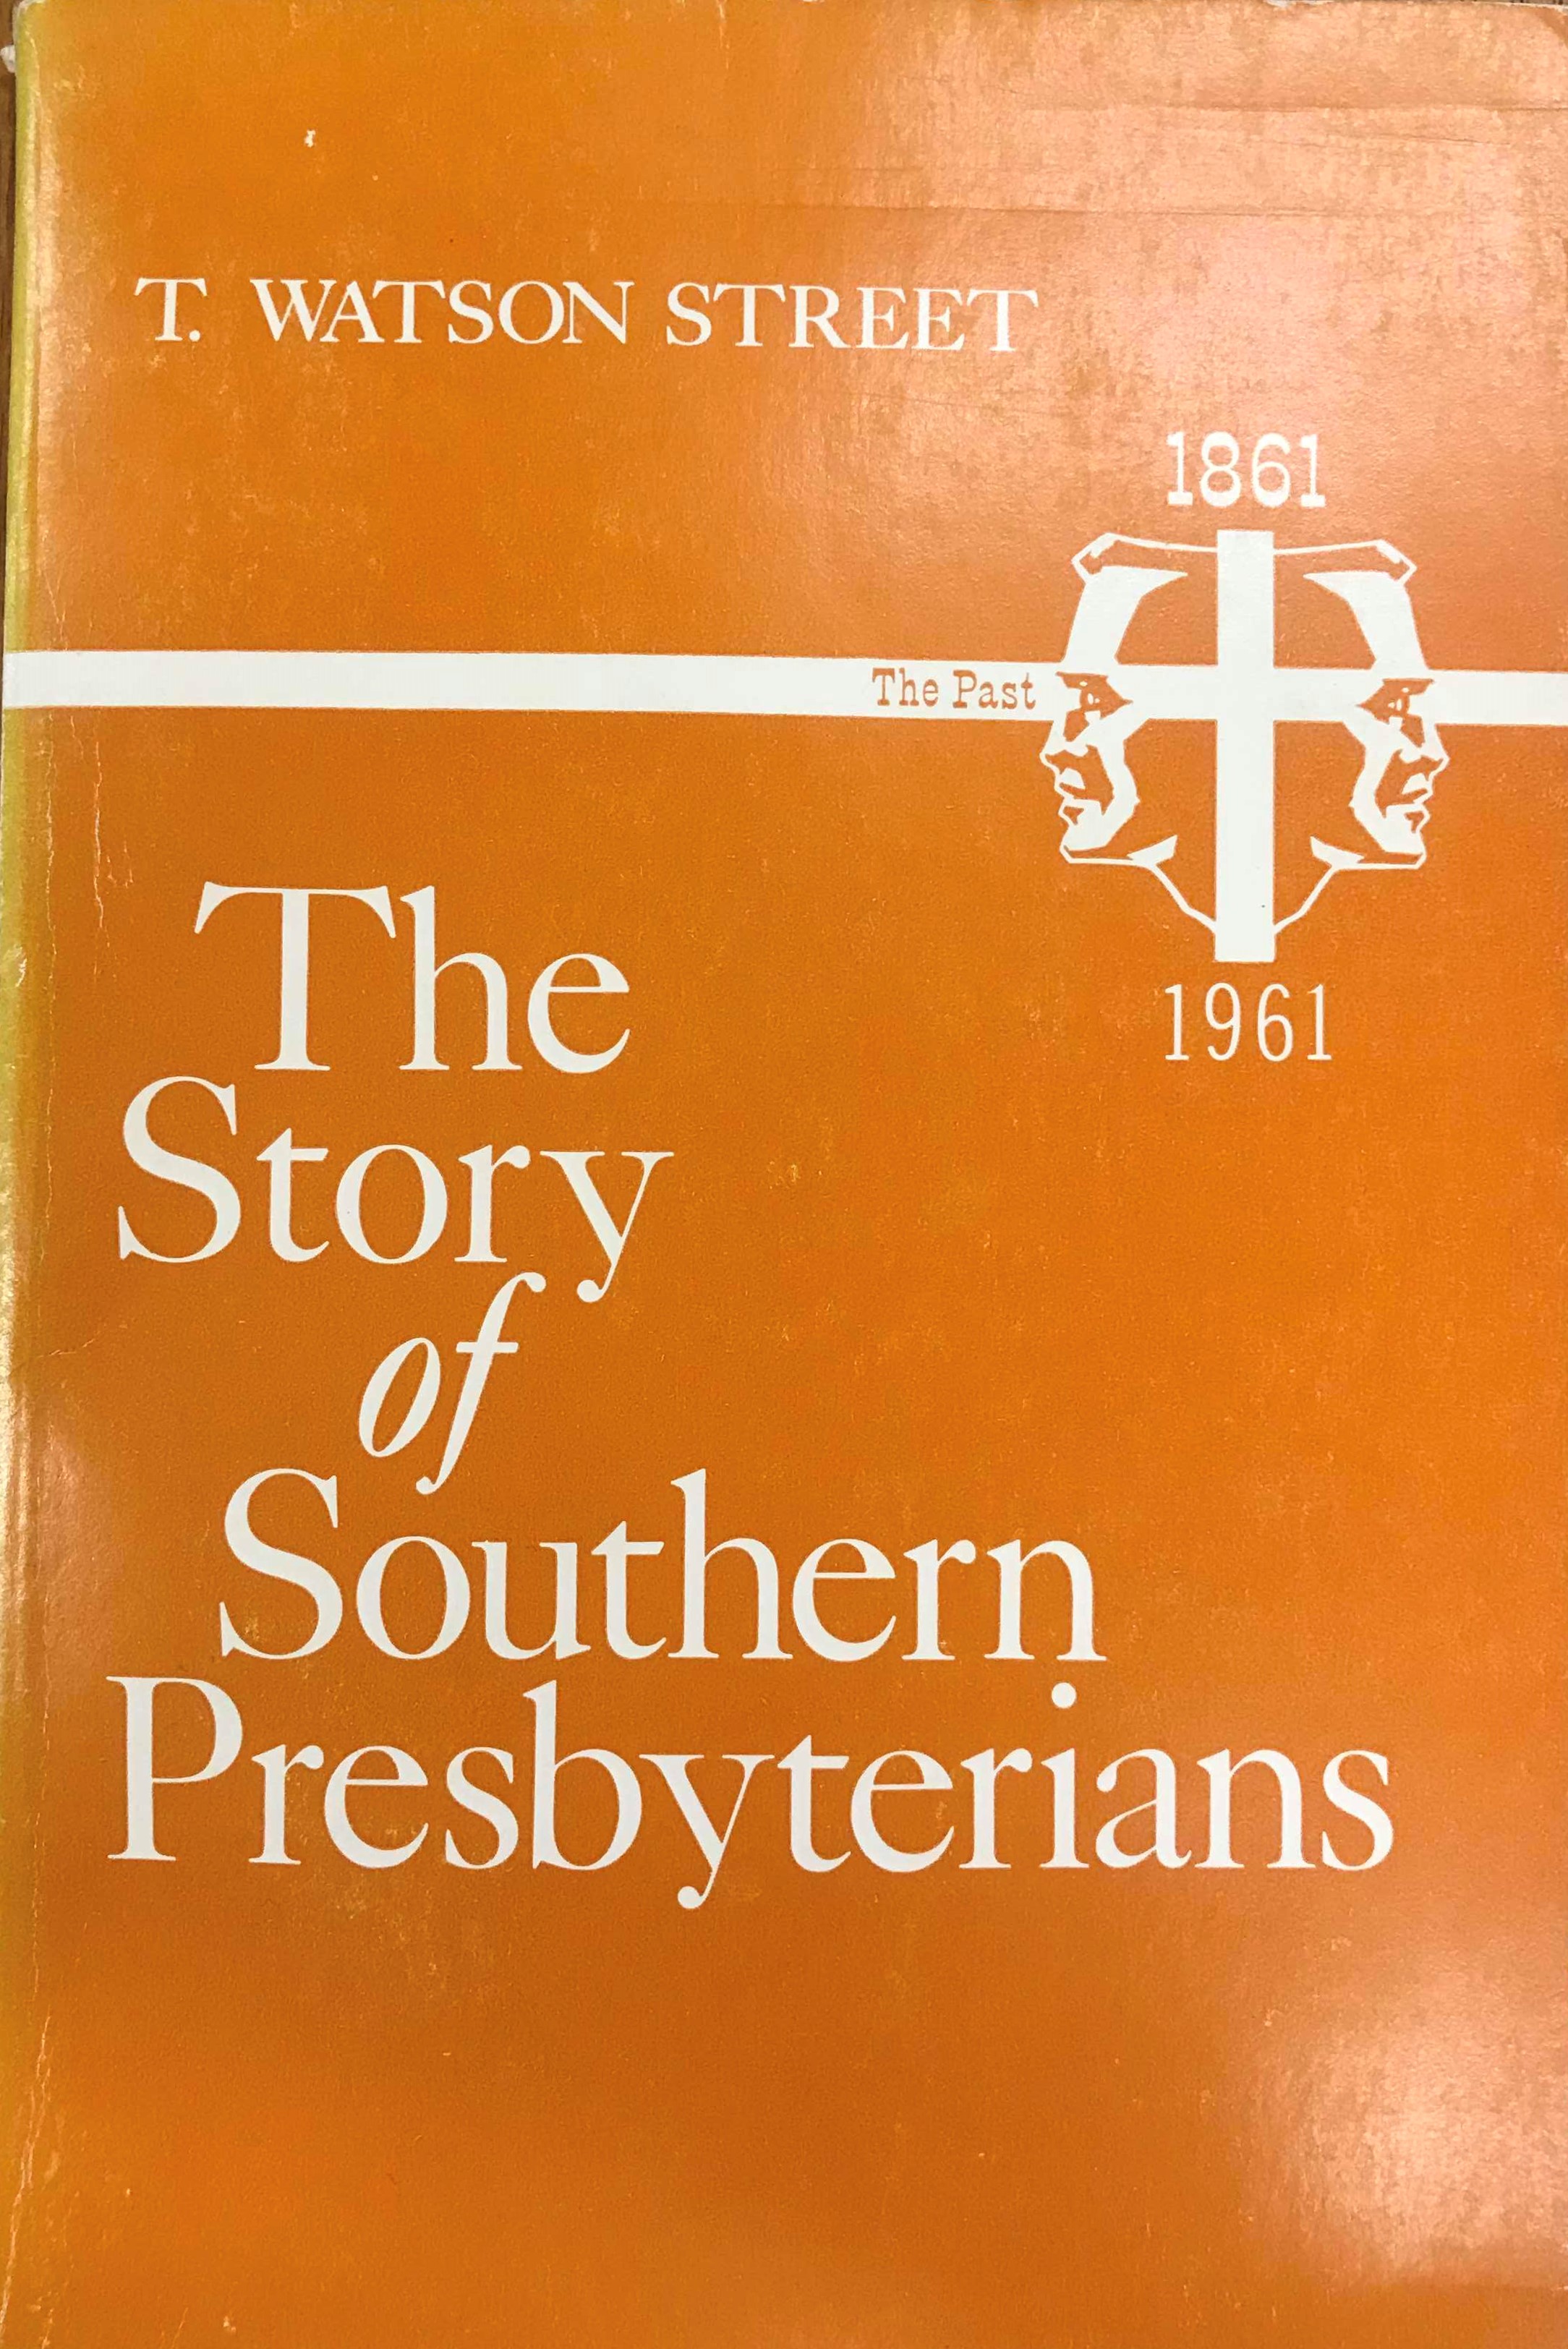 Street, Story of Southern Presbyterians.jpg